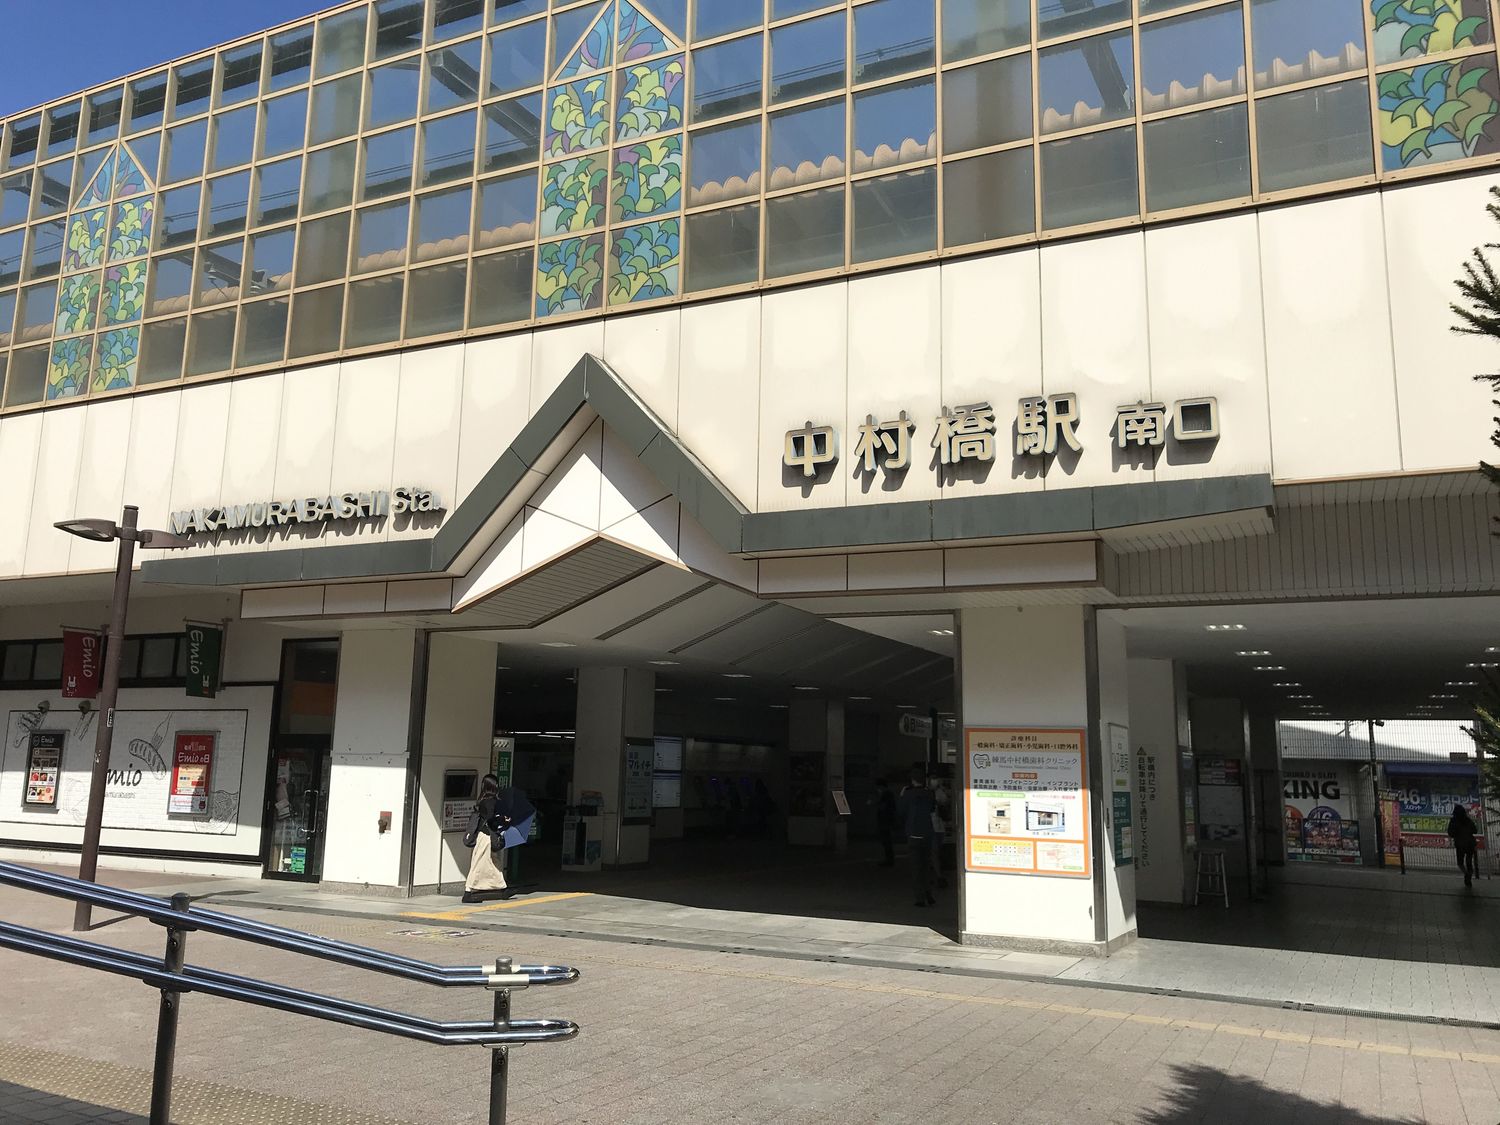 丸勝かつおぶし株式会社は中村橋駅から徒歩5分